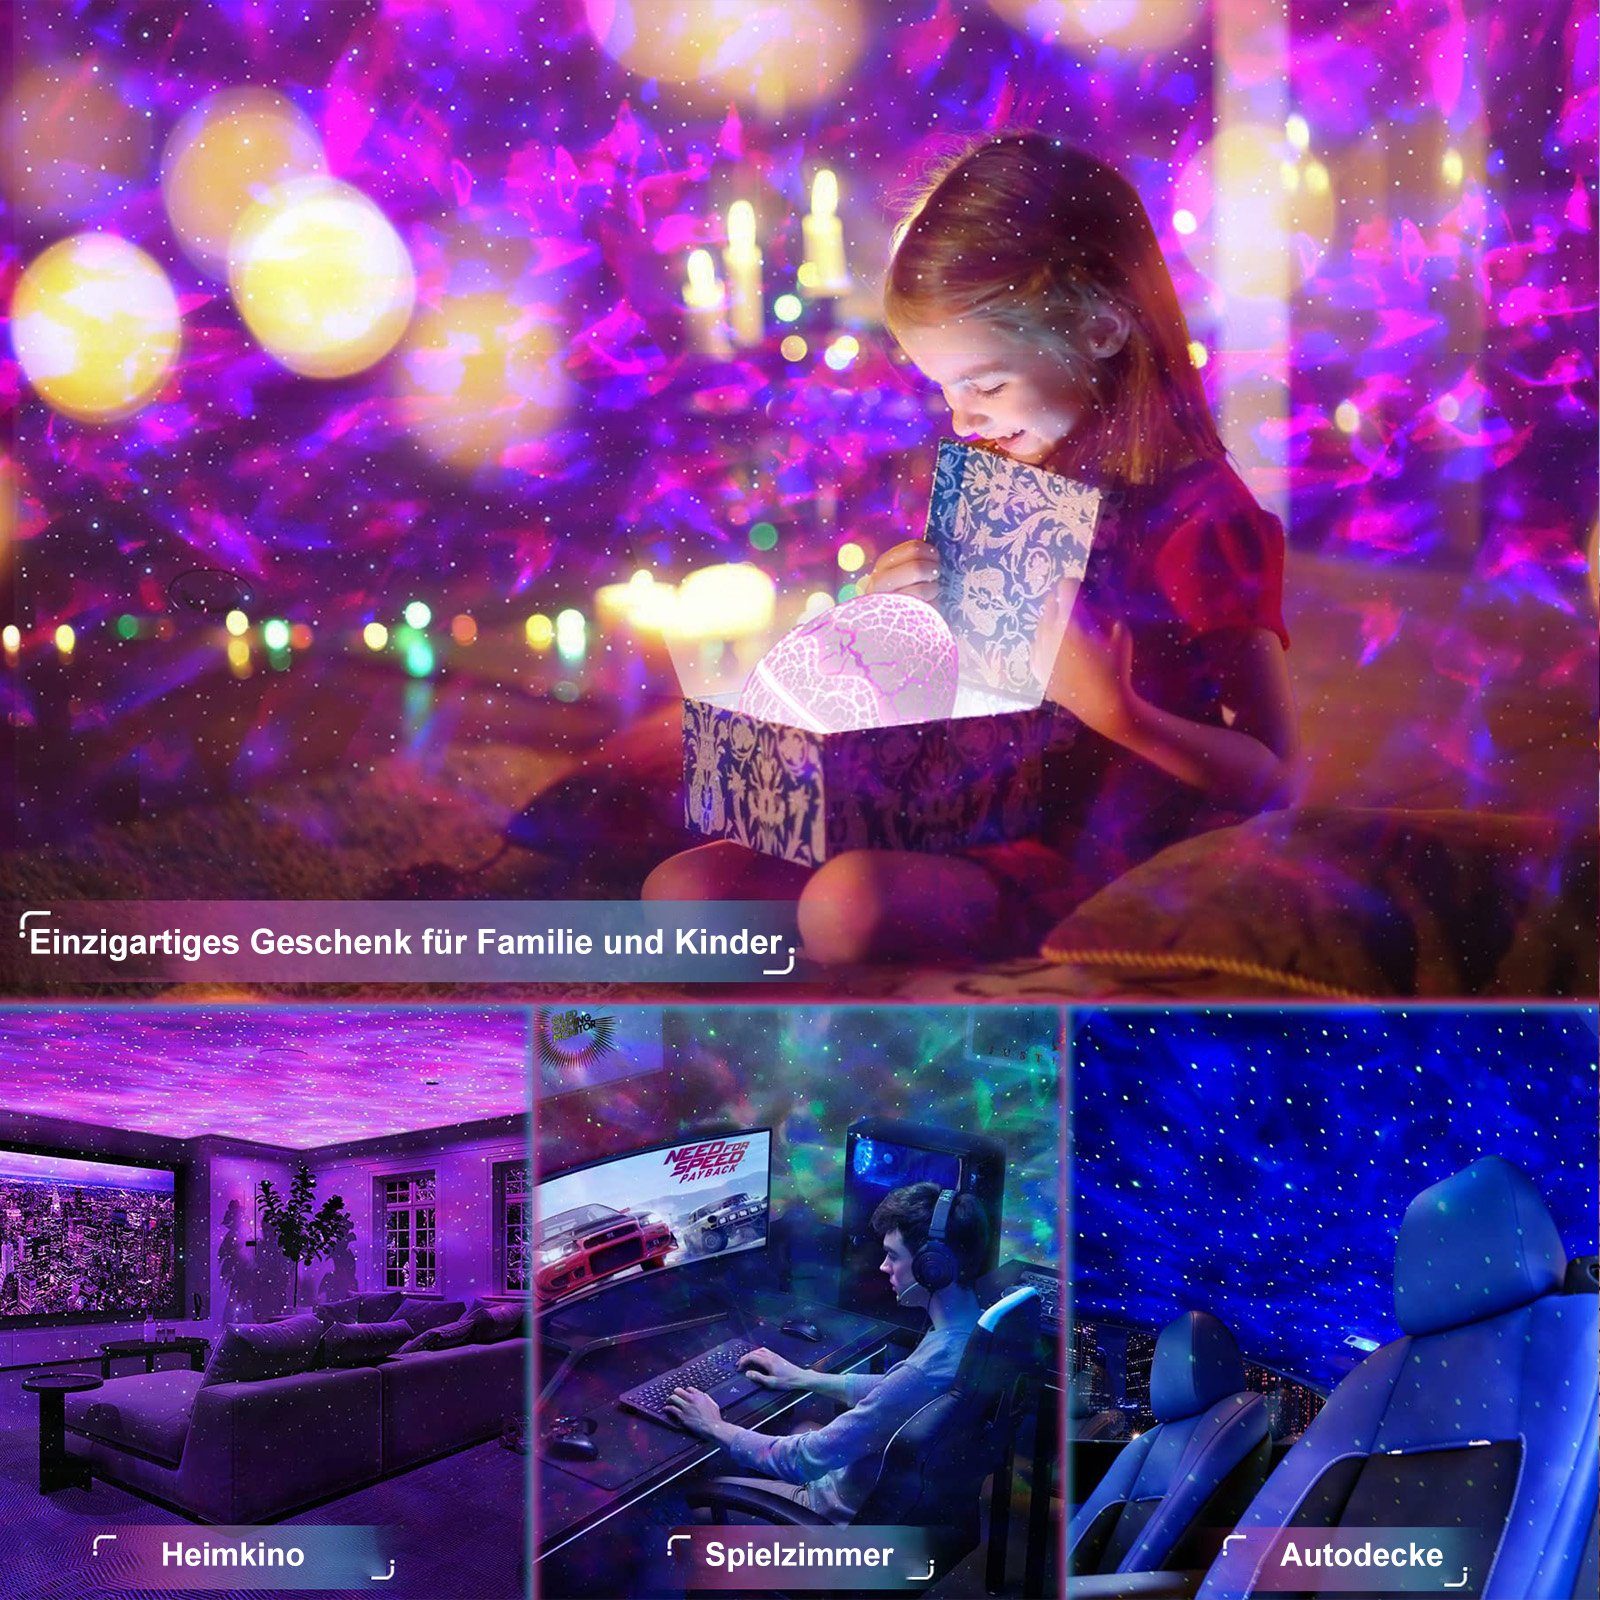 MUPOO Bluetooth, Nachtlicht Musikplayer,Projektionsfläche: LED Blau Dinosaurier-Ei Aurora LED-Sternenhimmel Galaxie Projektor 20-80 Lampe, & Projektor Lichtprojektor Fernbedienung